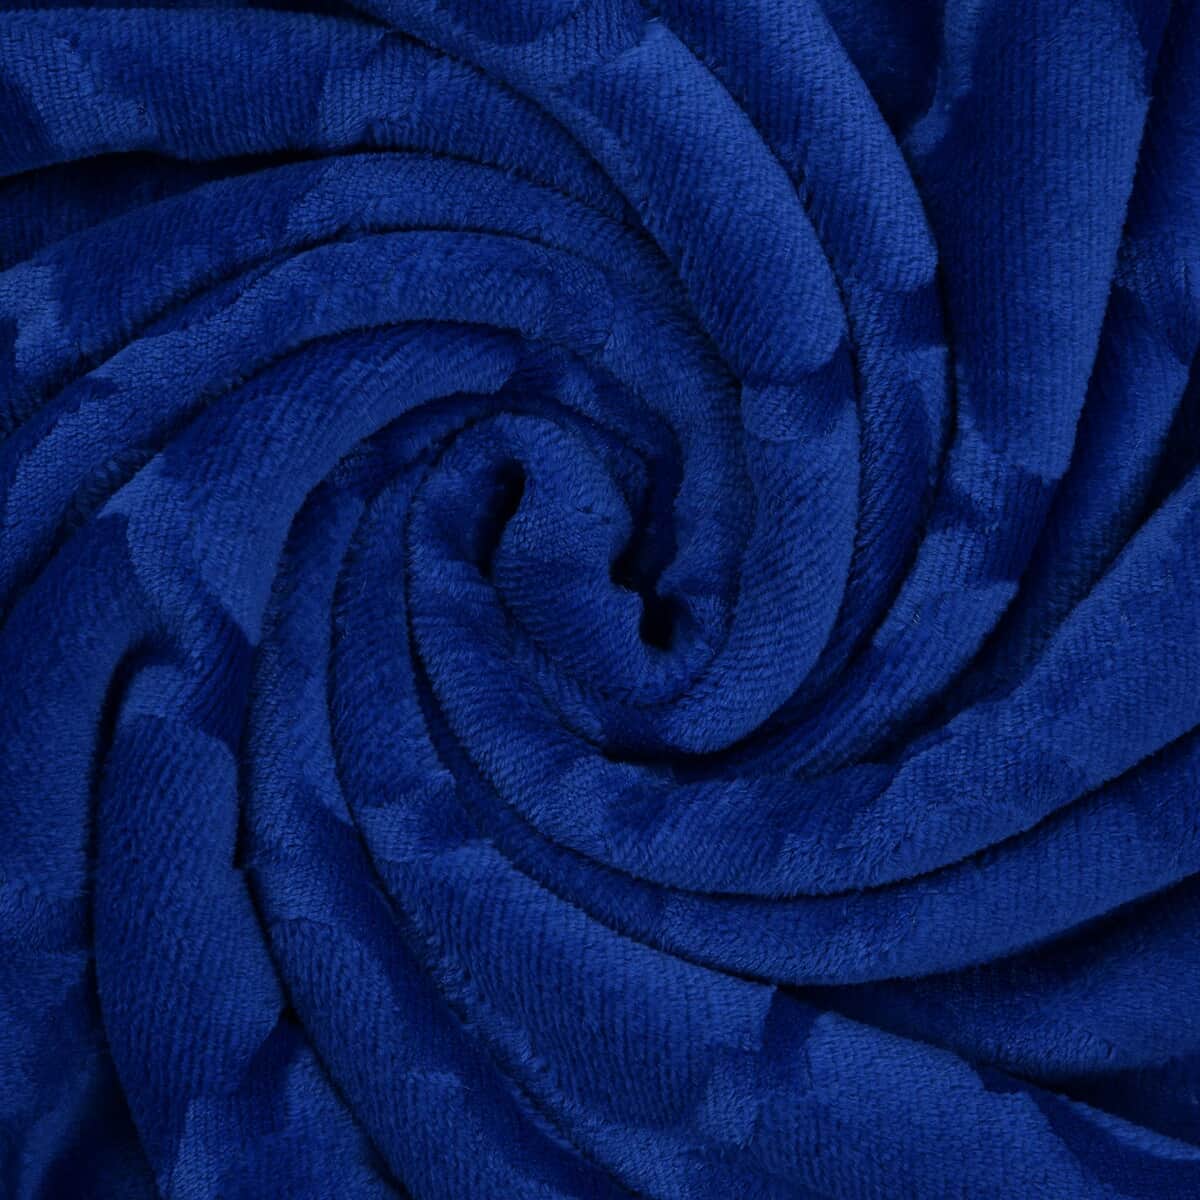 Homesmart Solid Blue Microfiber Brushed Flannel Sherpa Blanket image number 5